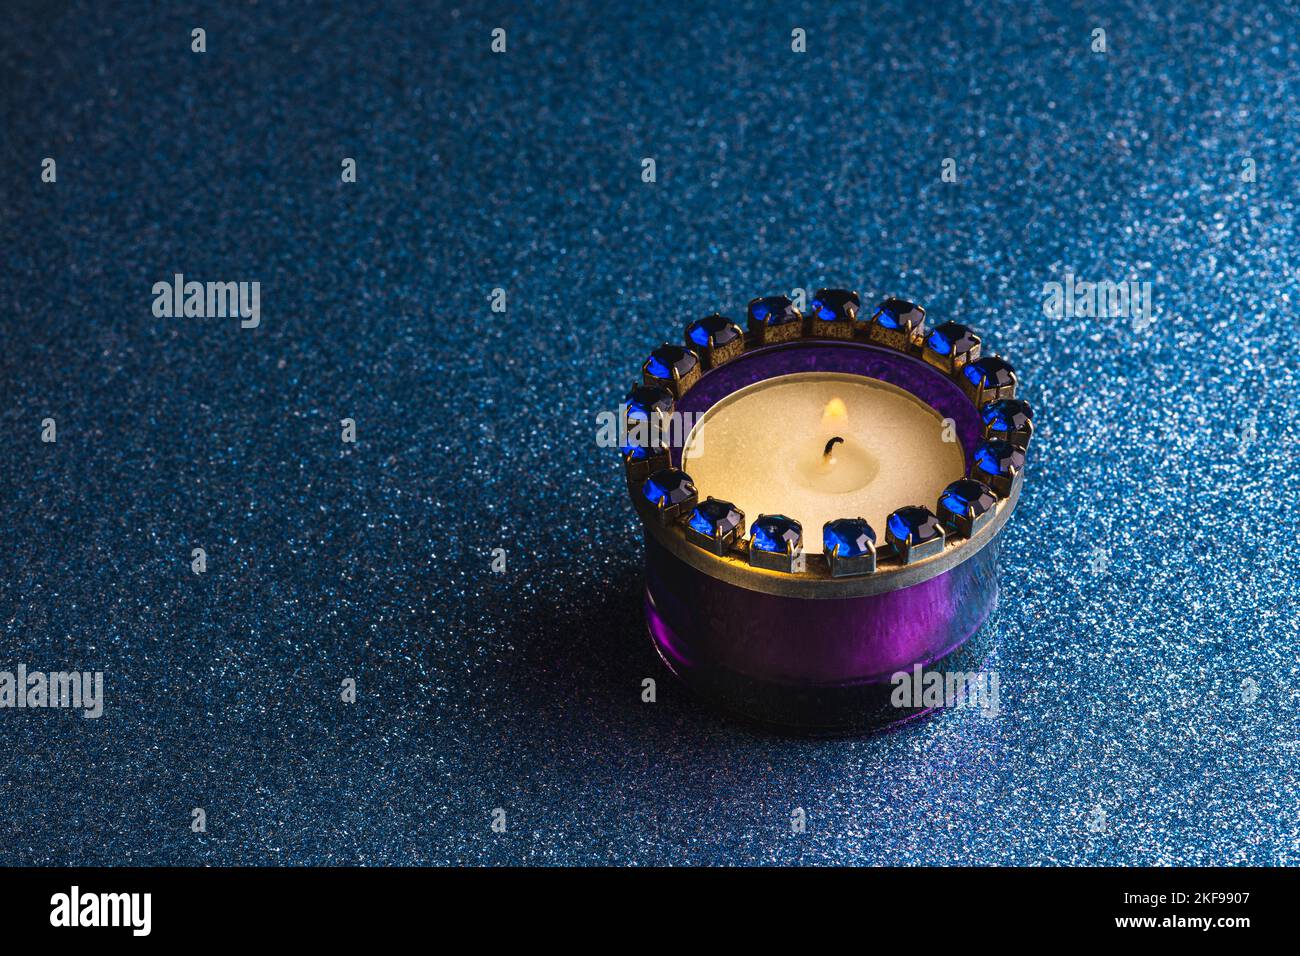 Una candela di luce del tè che brucia in un supporto di vetro viola su uno sfondo blu scuro con glitter. Foto Stock